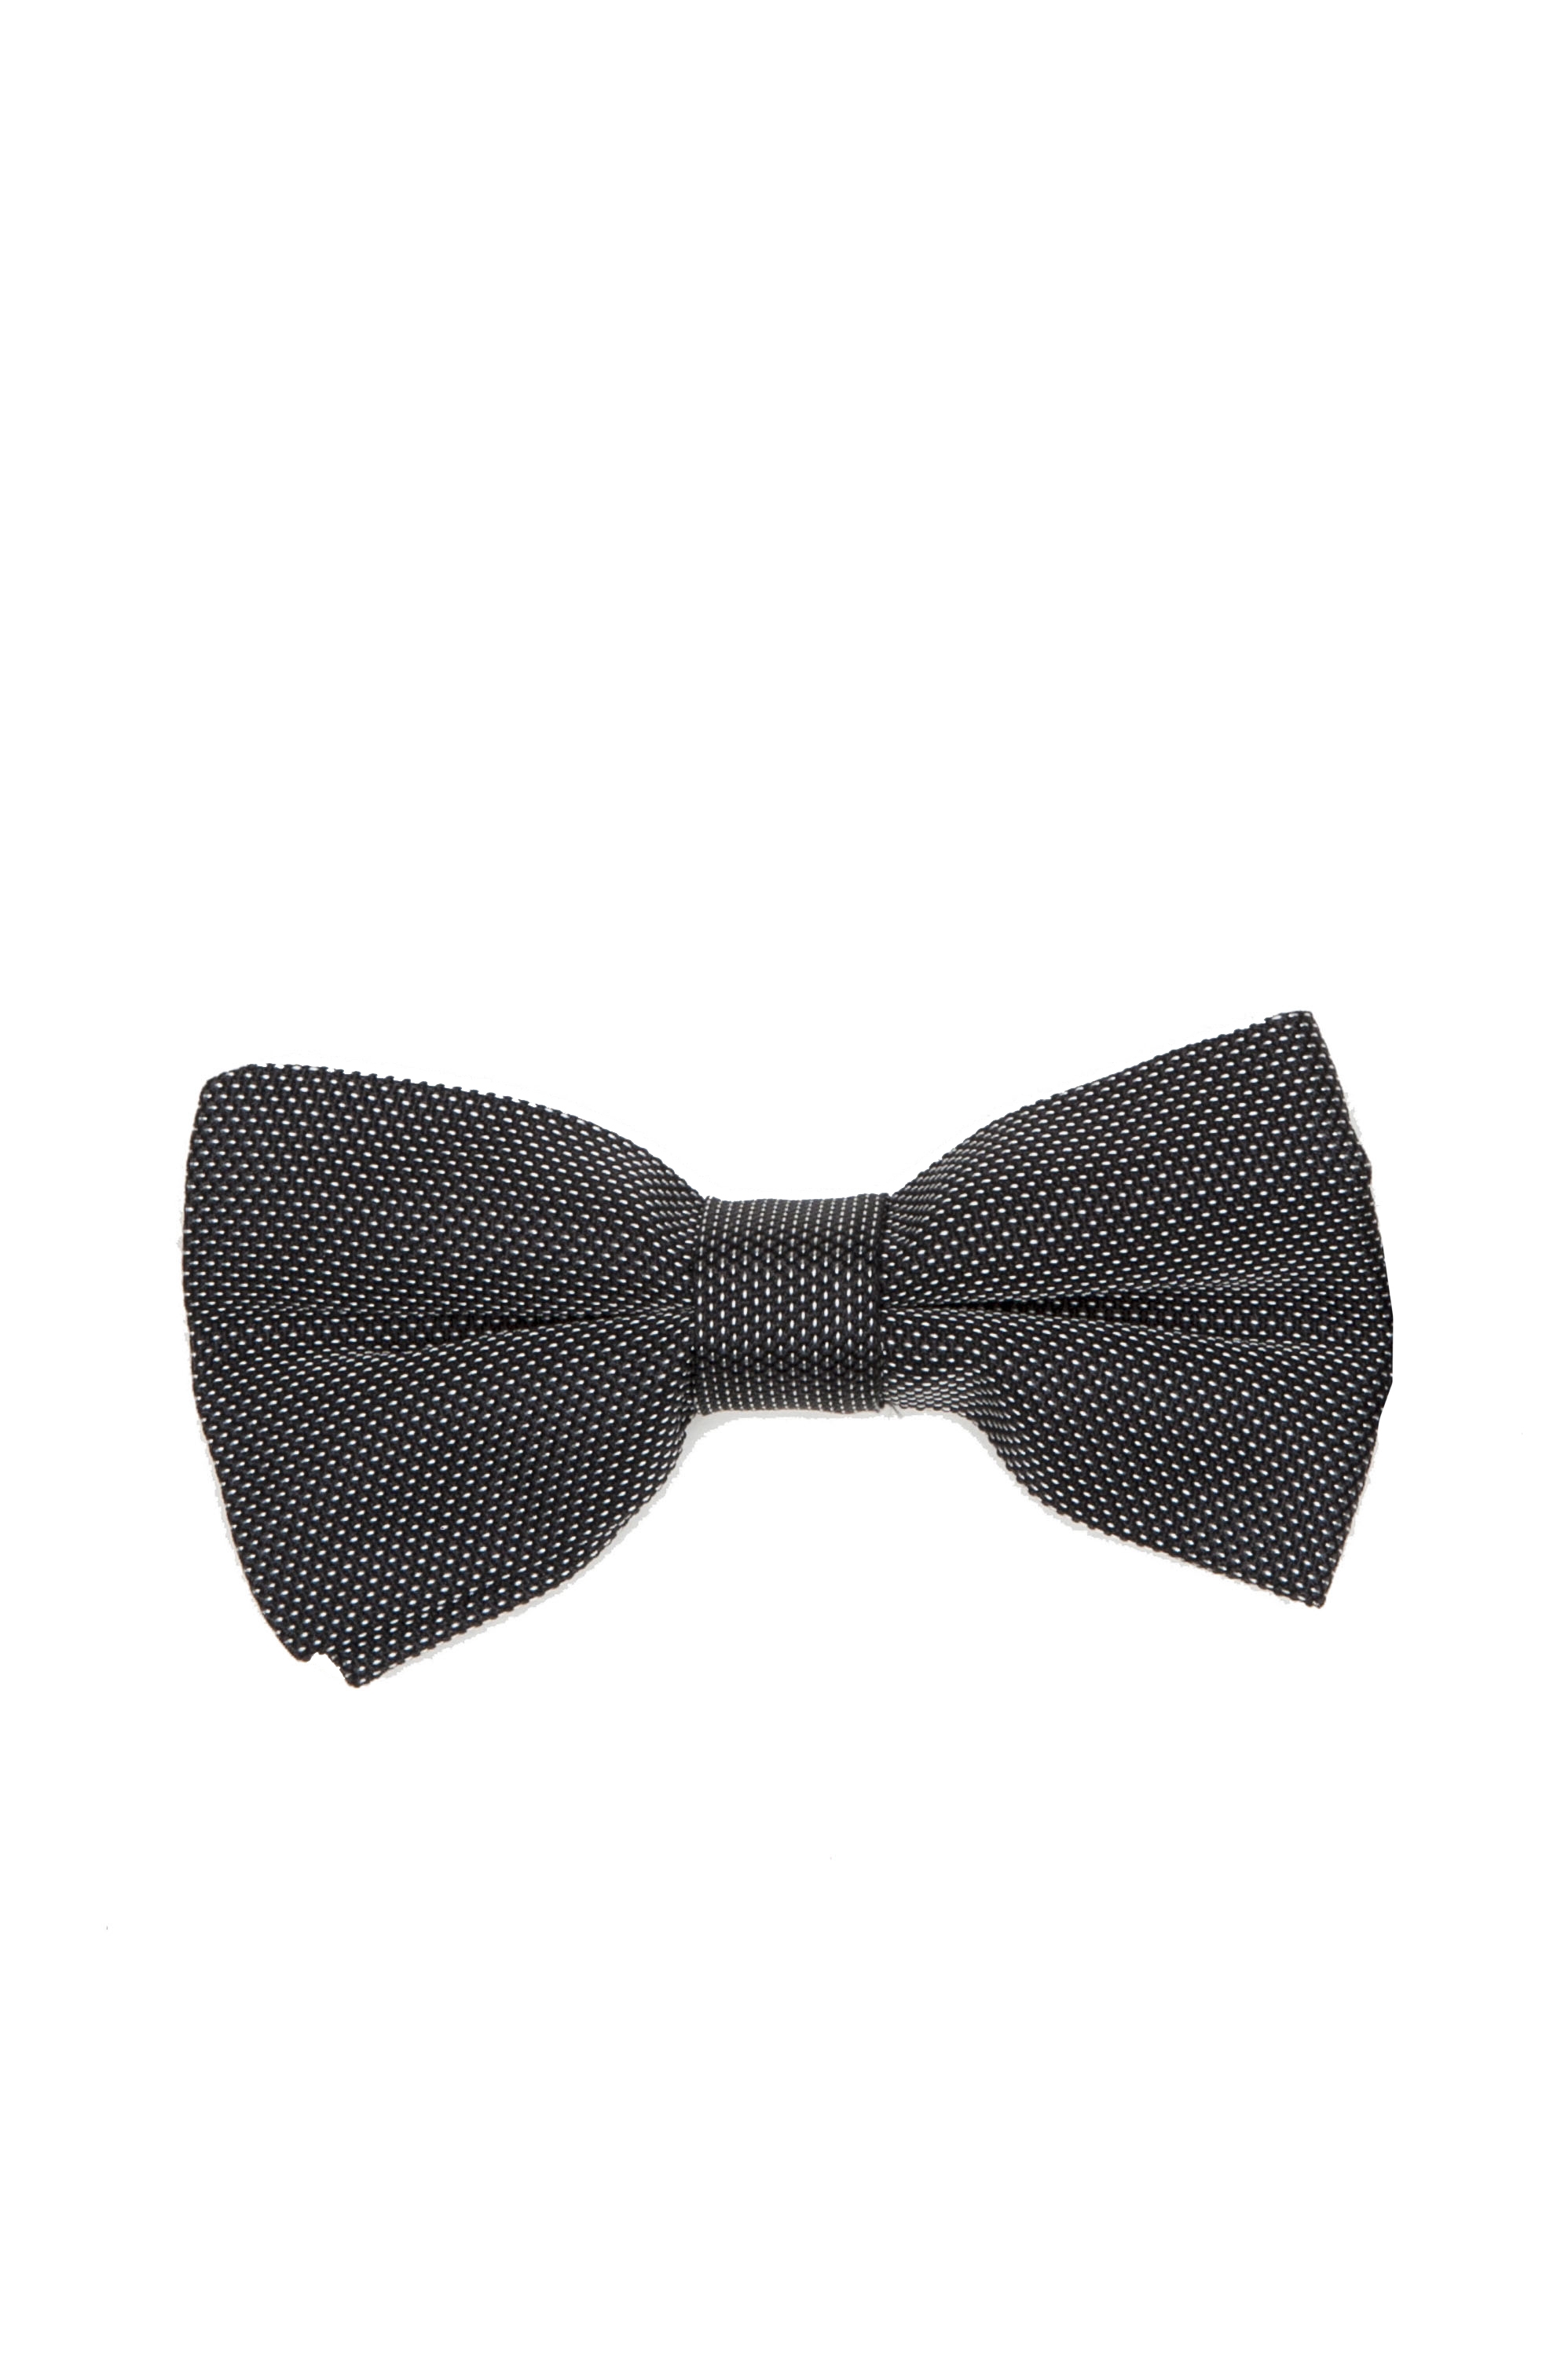 SBU 01031 Classic ready-tied bow tie in grey silk satin 01